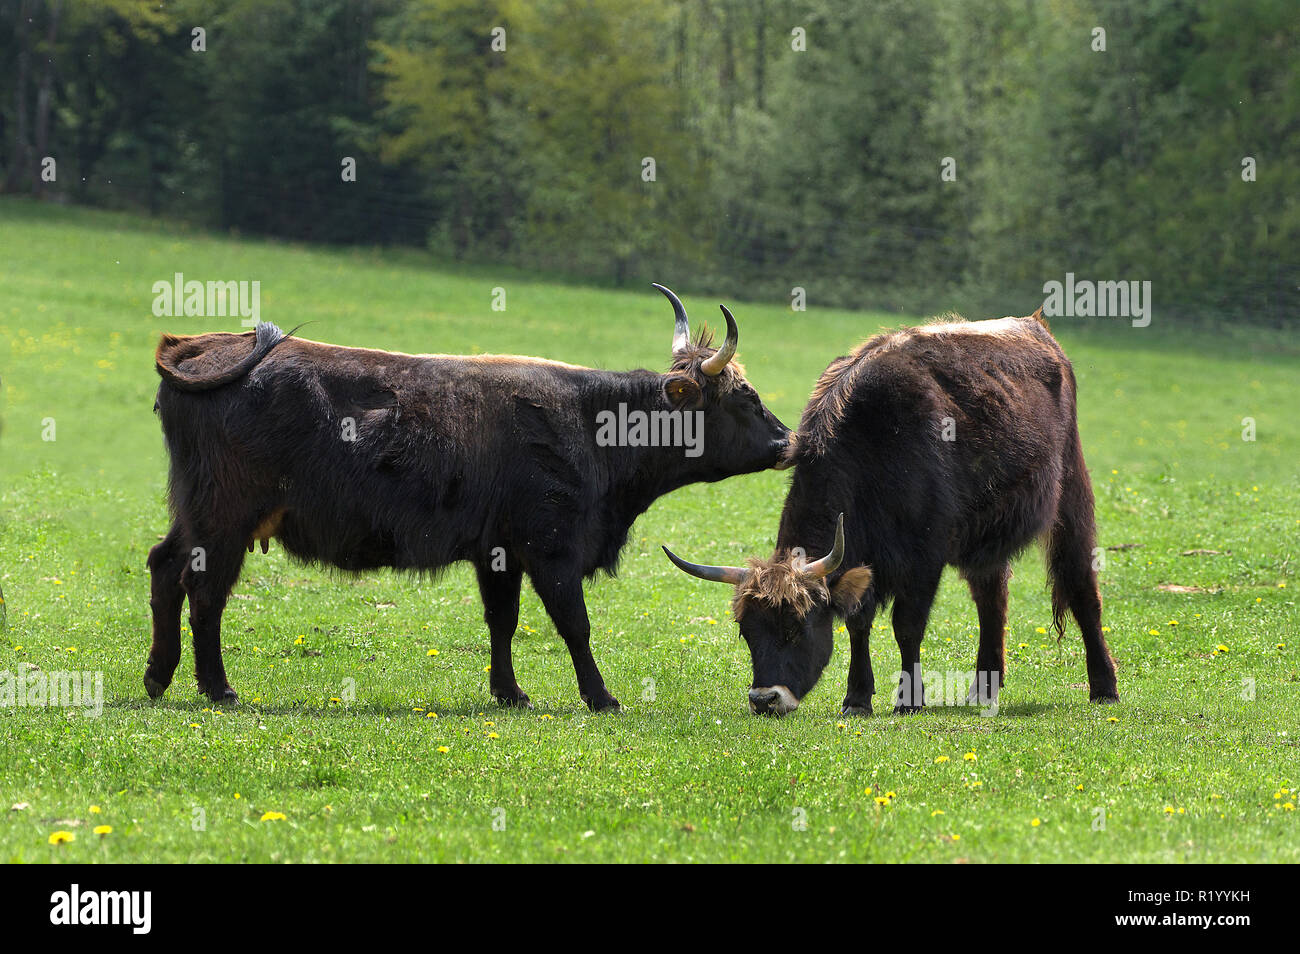 L'Aurochs de Heck, recréé les bovins (Bos primigenius primigenius). Deux vaches dans un pré, un reniflement à l'autre. Allemagne Banque D'Images